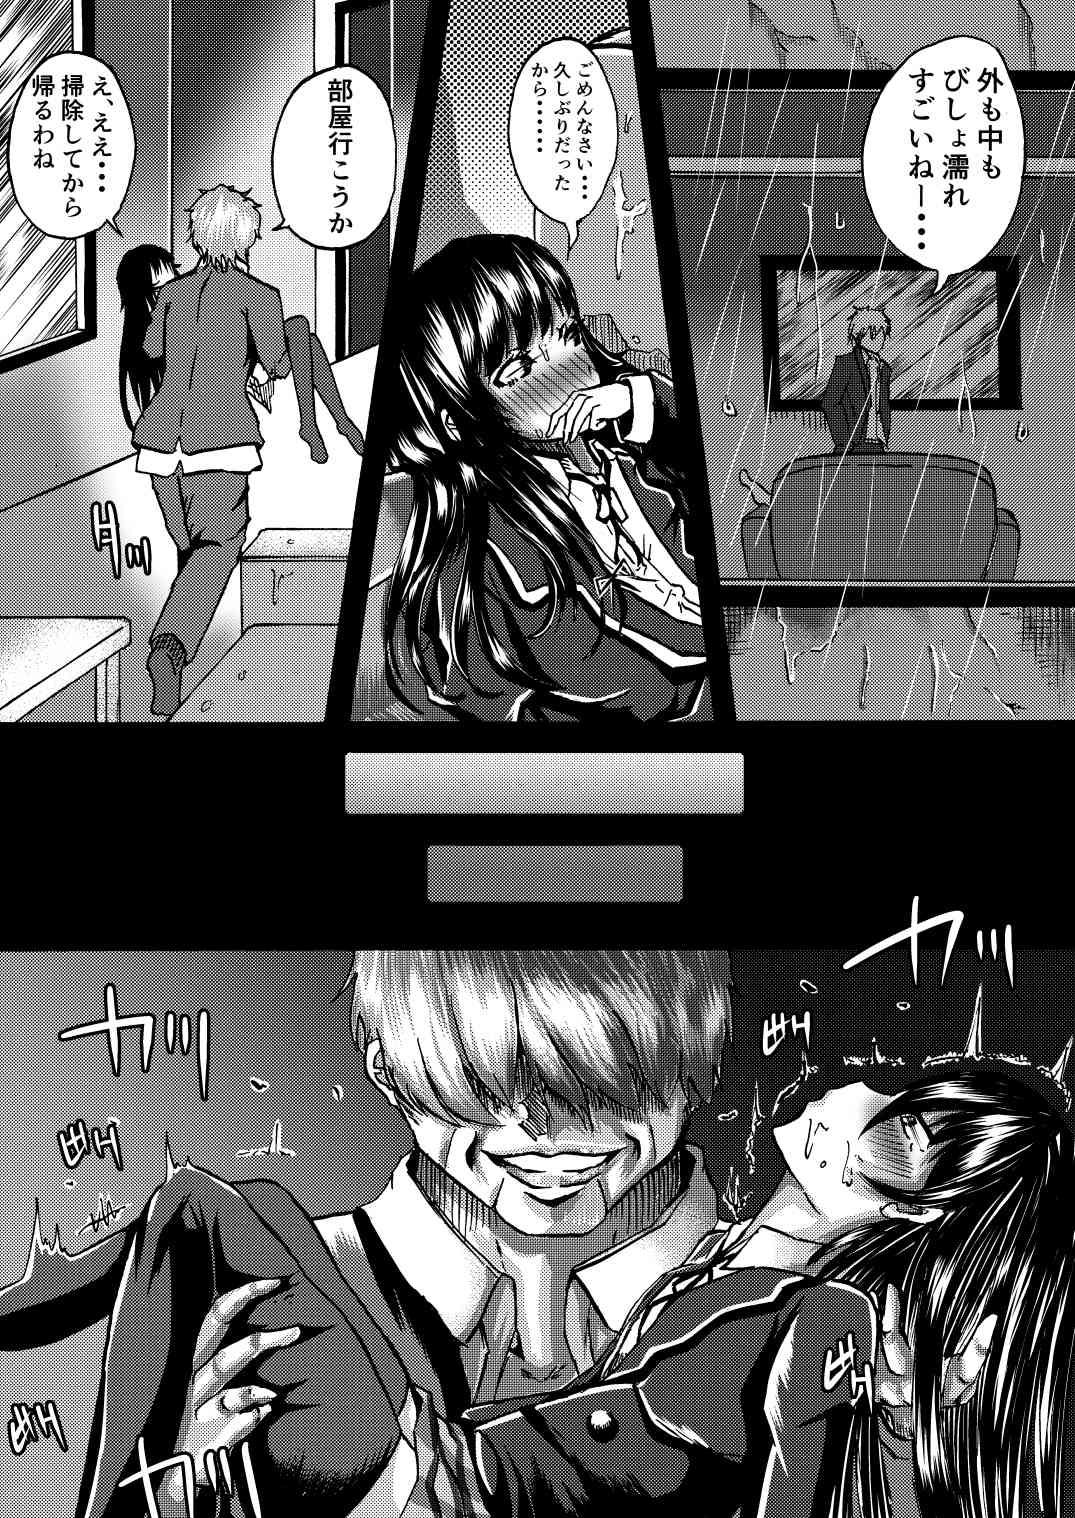 Teenager Yukinon to SEX Shitain daro!? - Yahari ore no seishun love come wa machigatteiru Pegging - Page 11